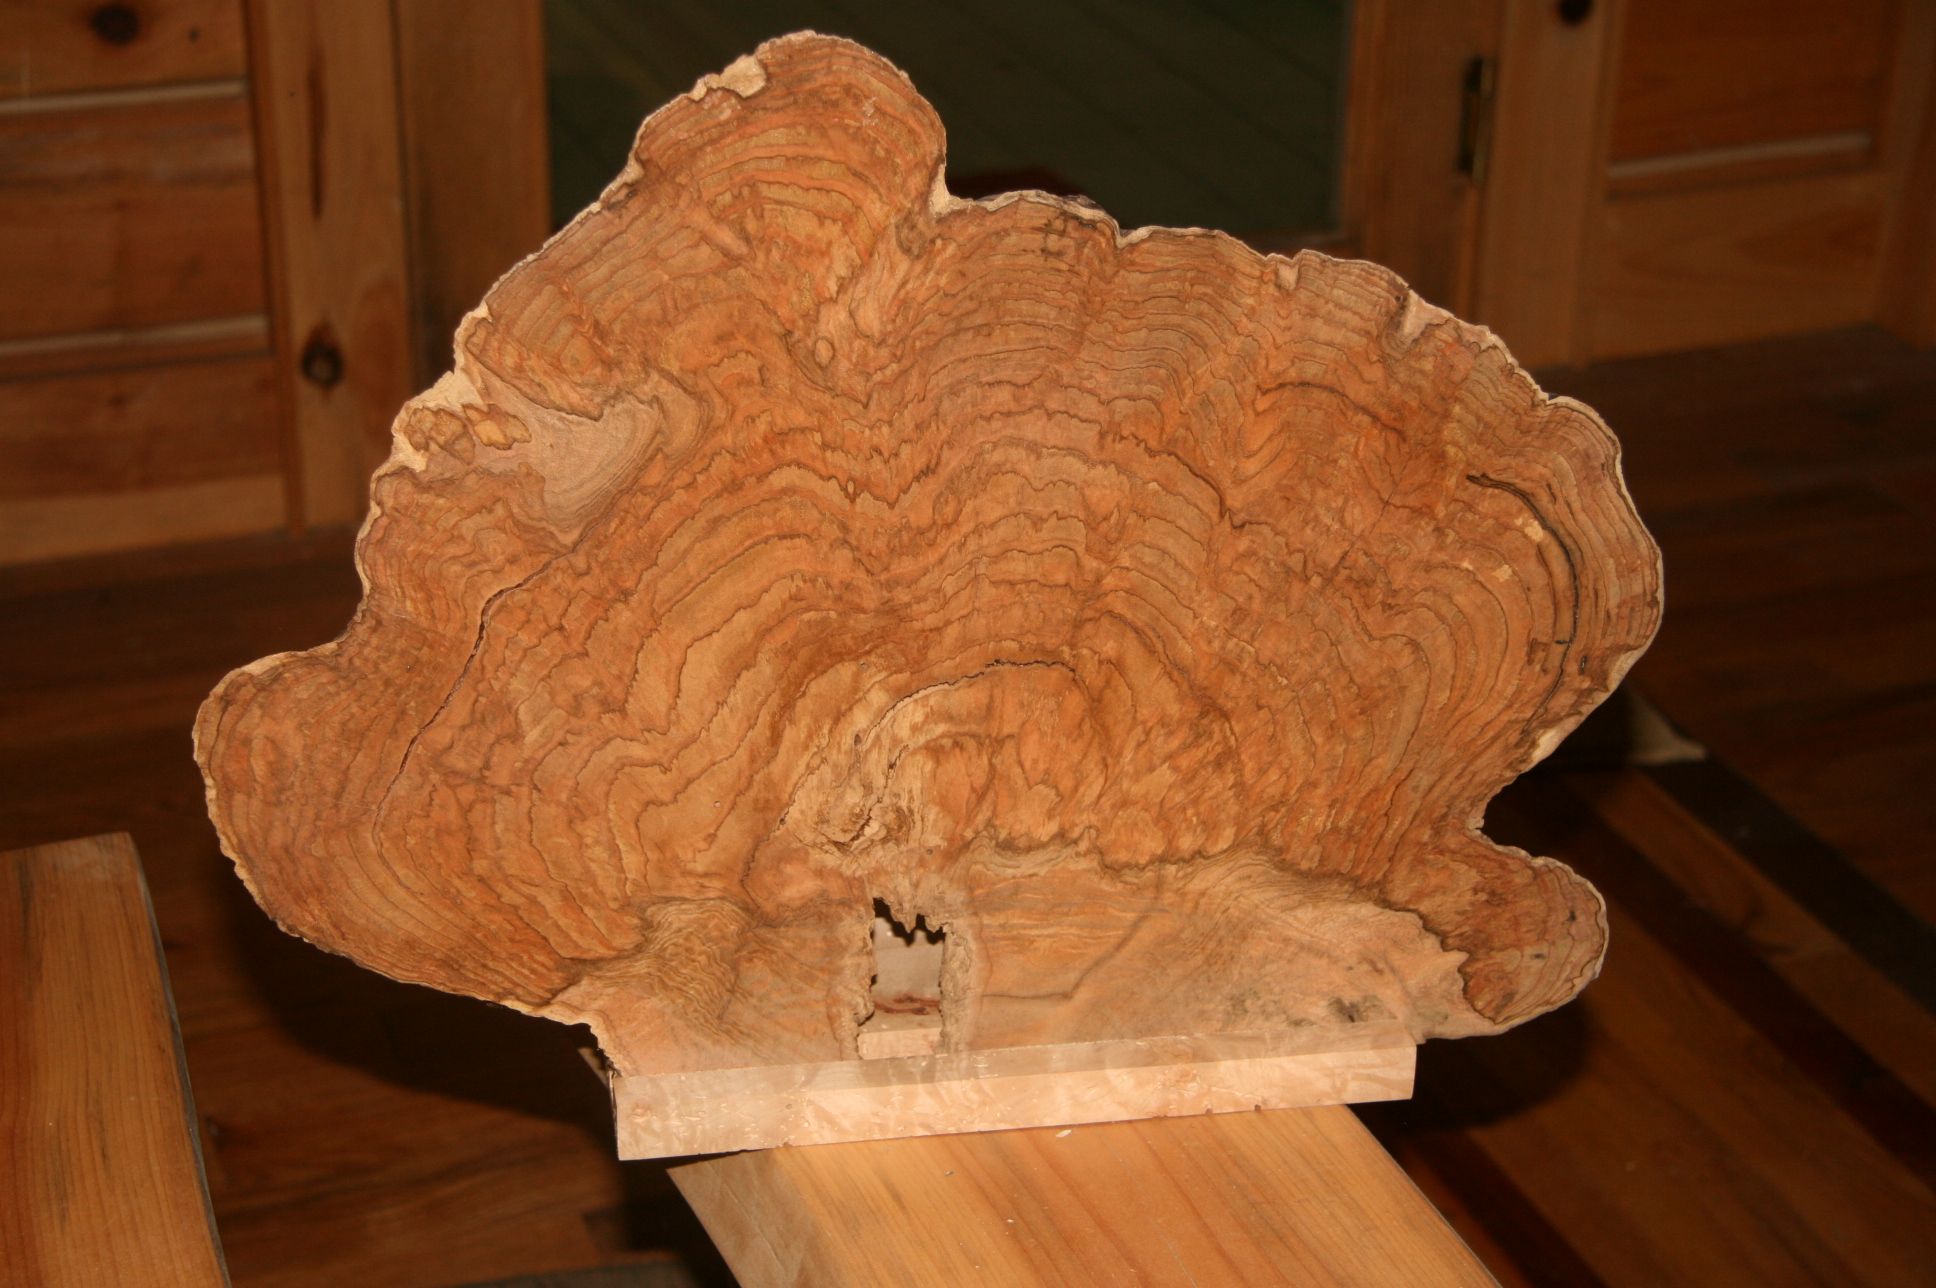 burled maple wood